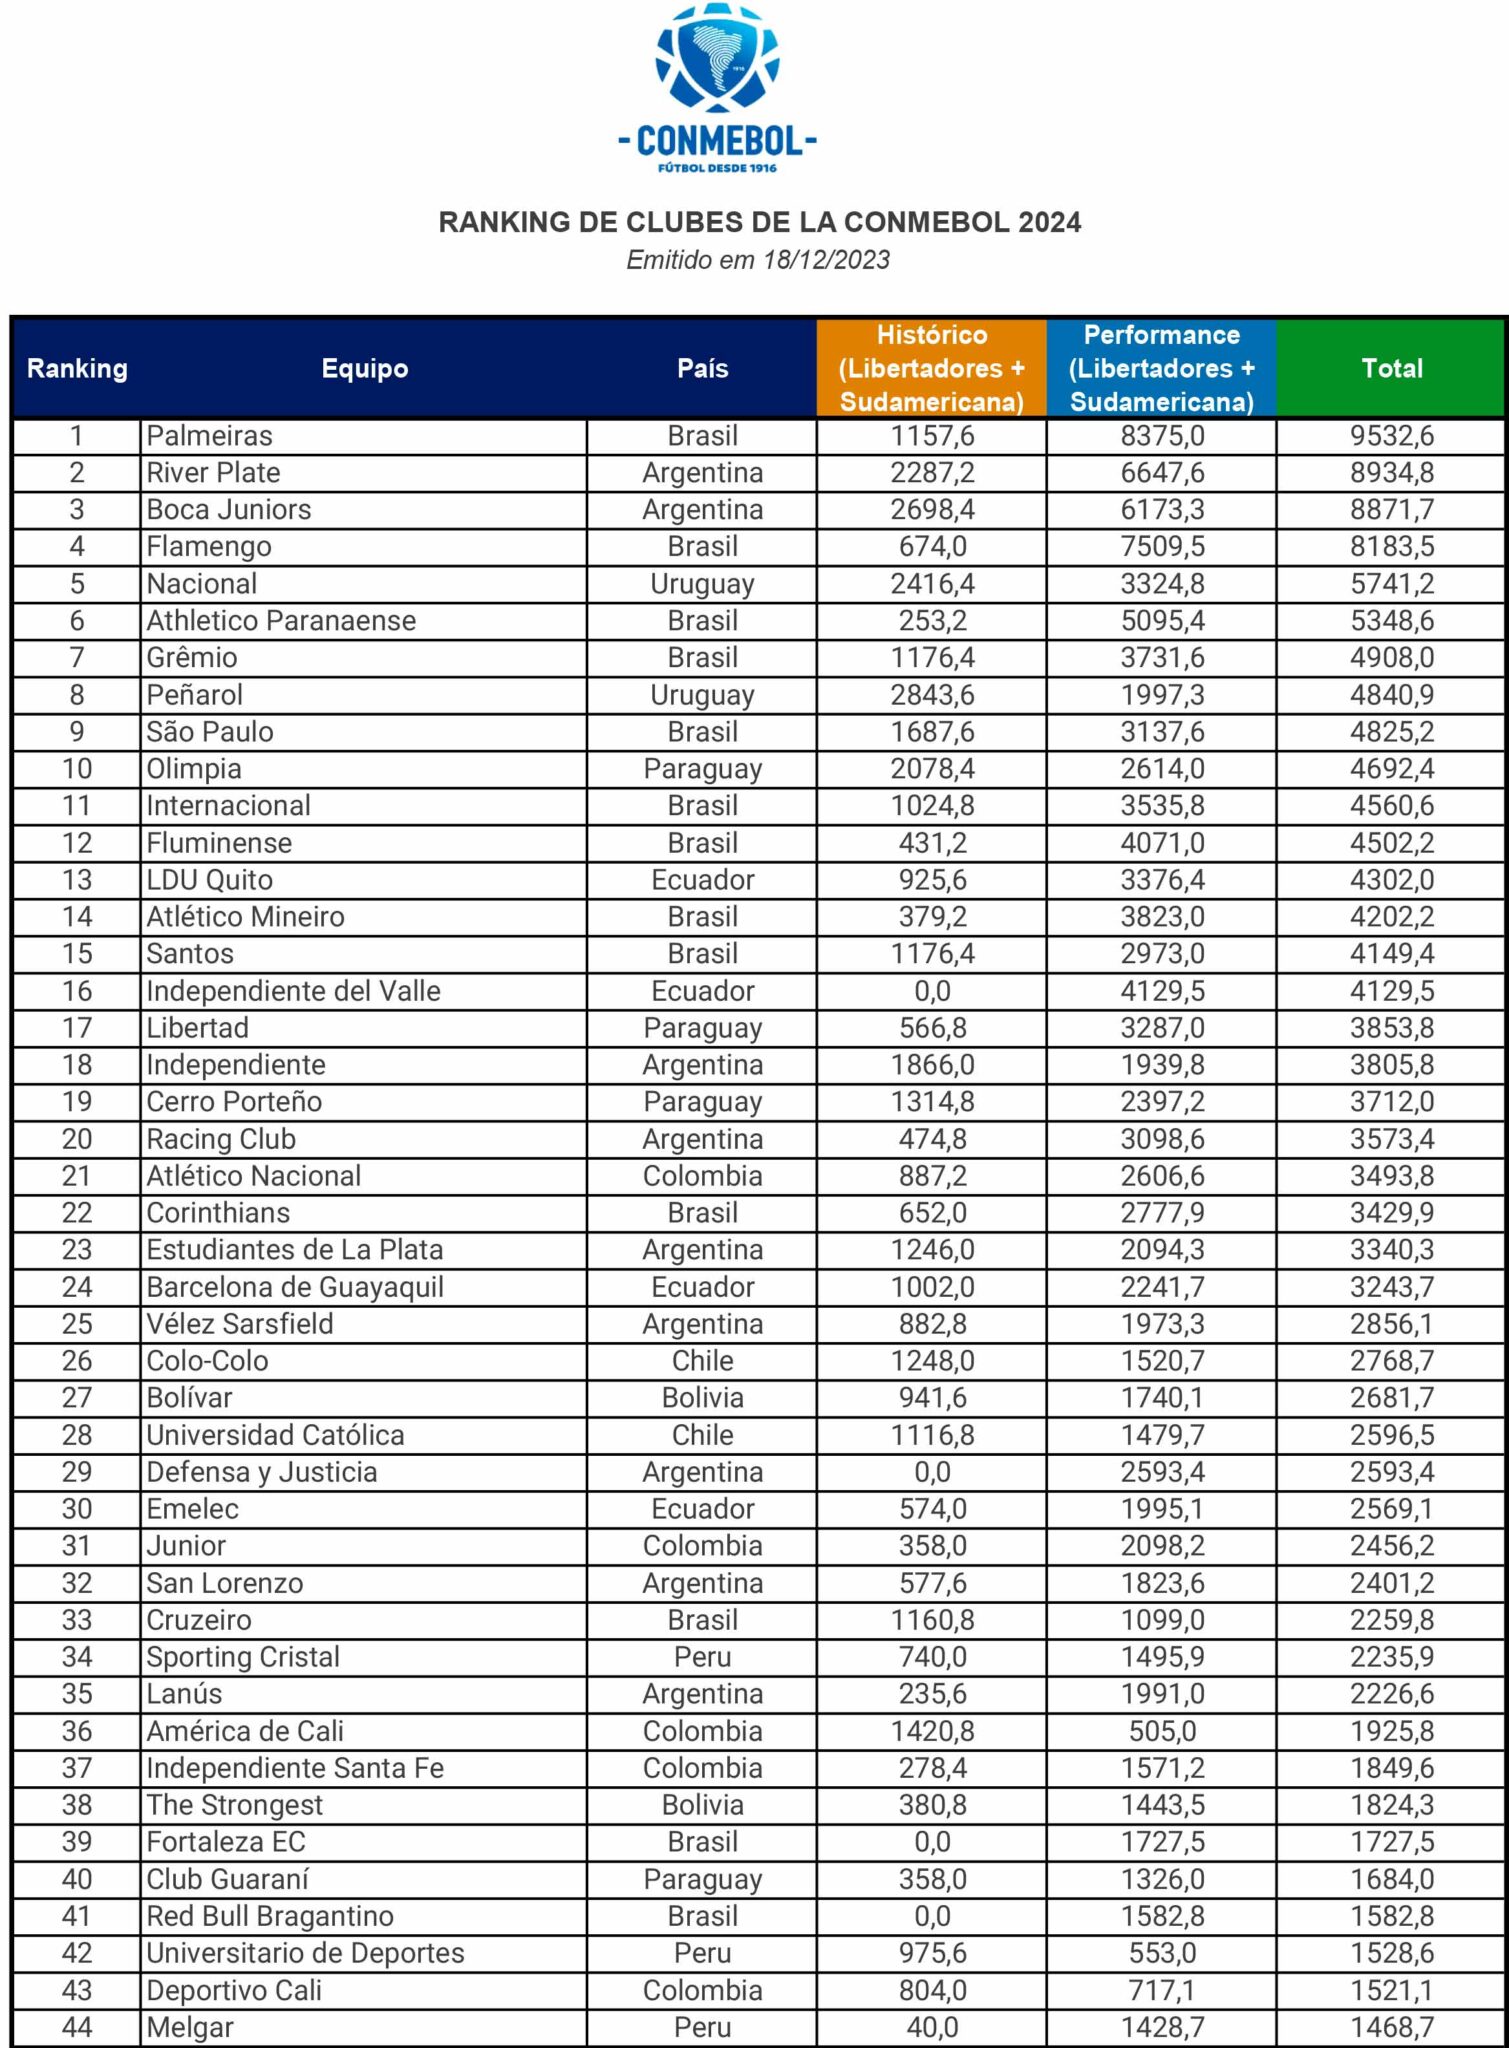 Ranking de clubes da Conmebol 2024